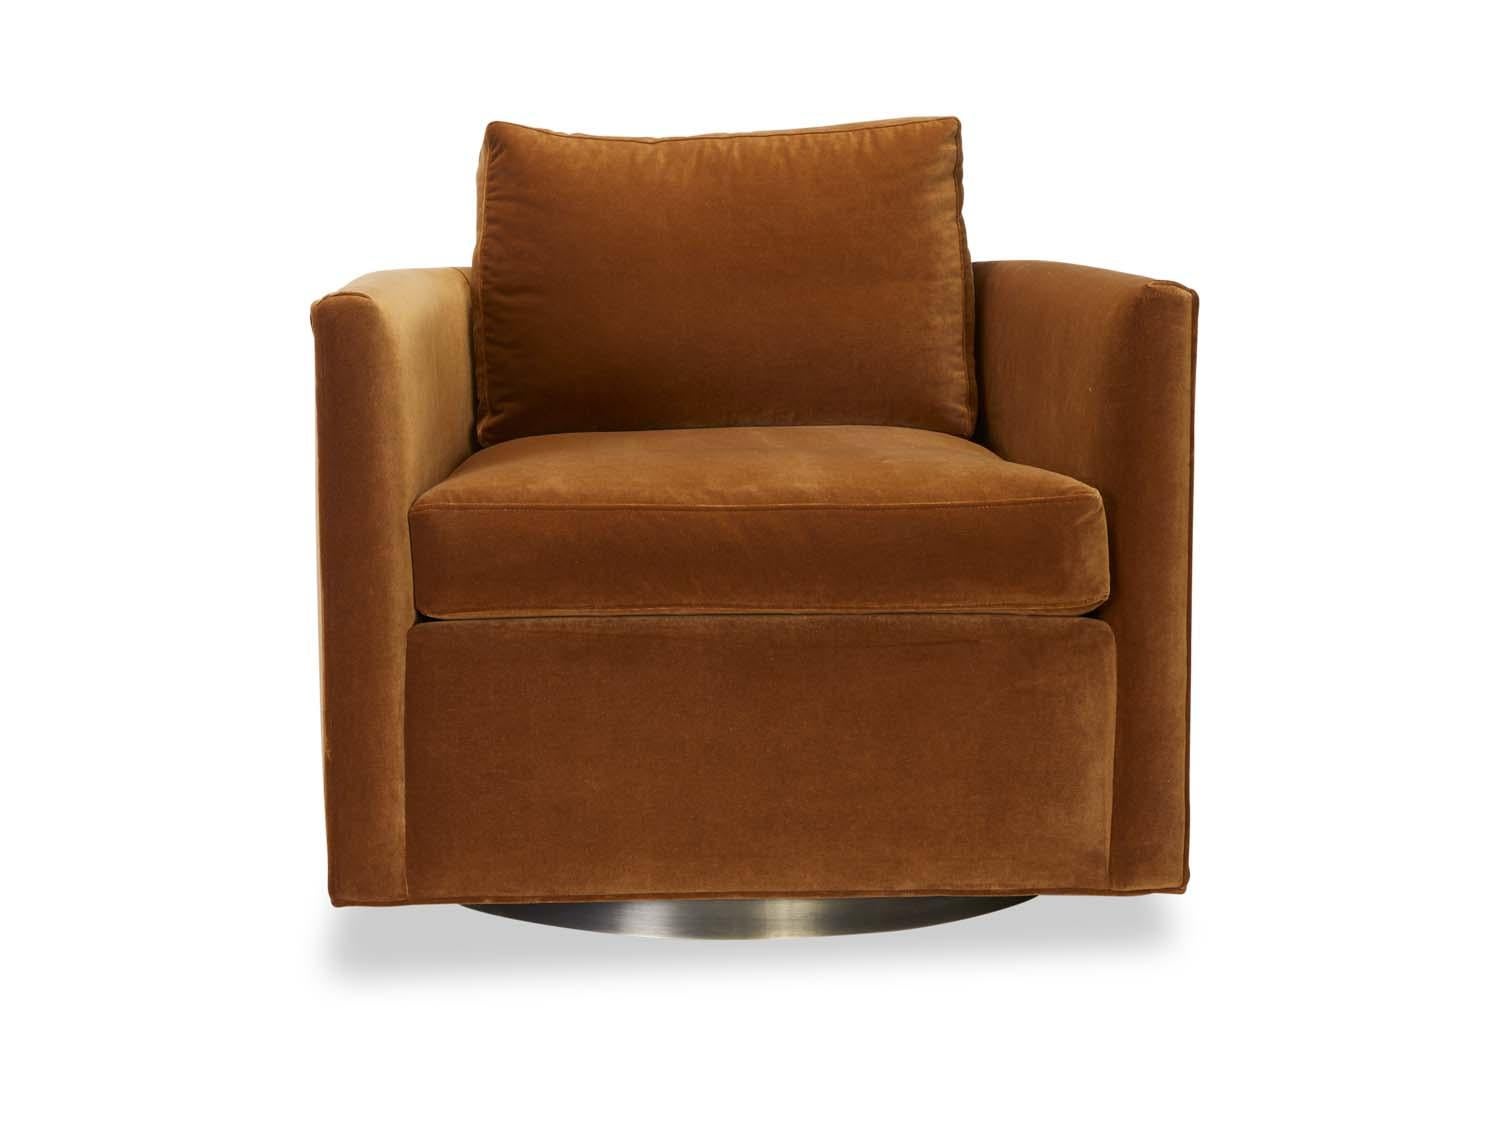 Le Curved Back Swivel Chair est un fauteuil de salon de style smoking avec des coins incurvés et une base en métal. Le fauteuil est doté de coussins d'assise et de dossier amovibles, enveloppés de duvet.

La collection Lawson-Fenning est conçue et